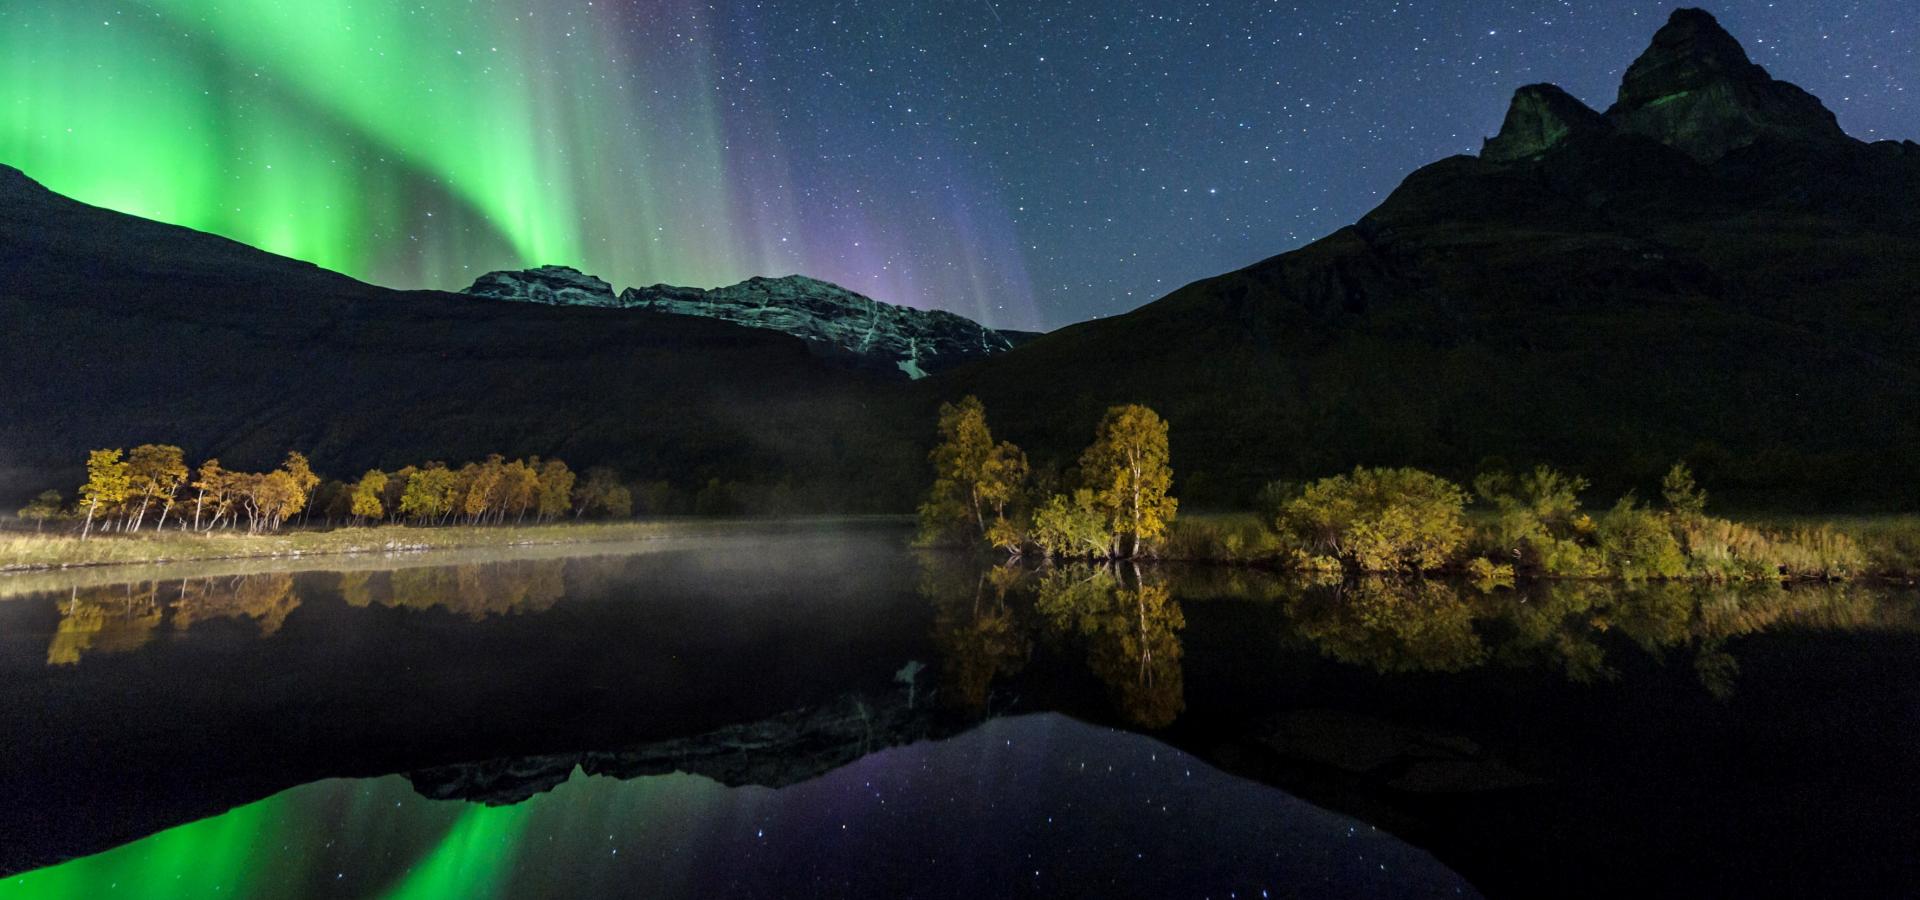 Northern Lights in Northern Norway, Lyngenfjord, by Jan R Olsen